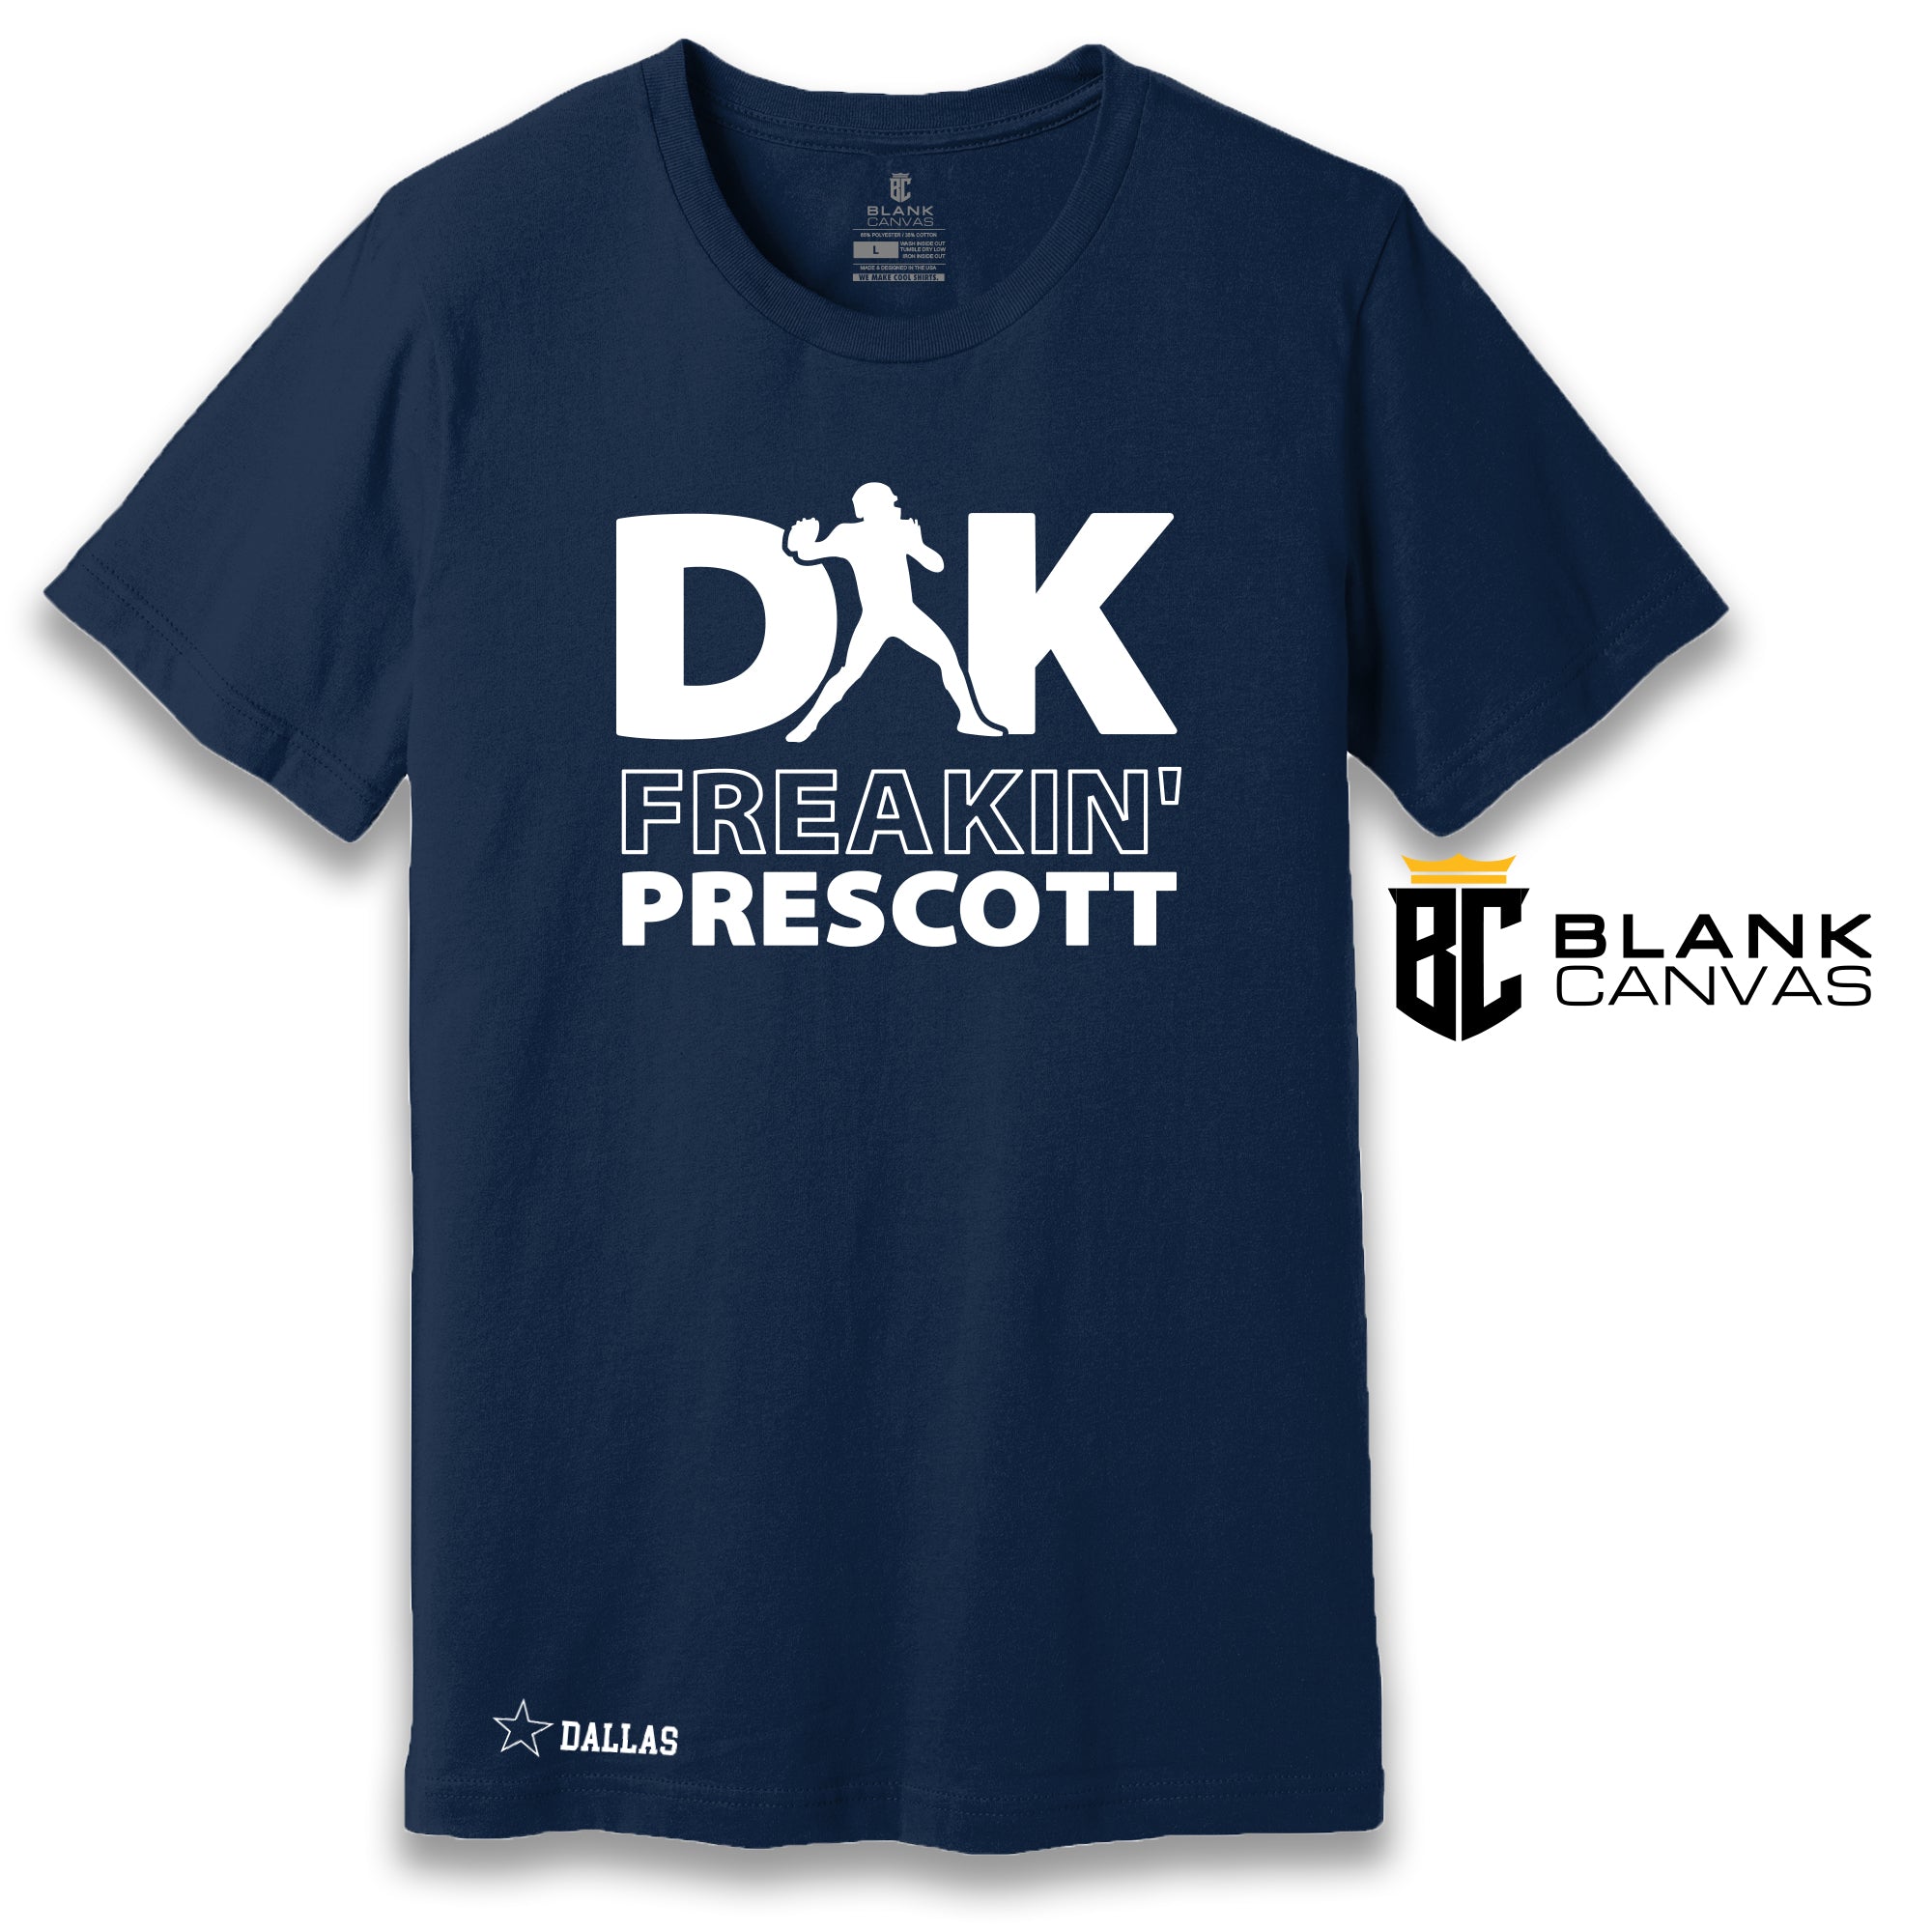 Dak Freakin' Prescott Dallas T-Shirt